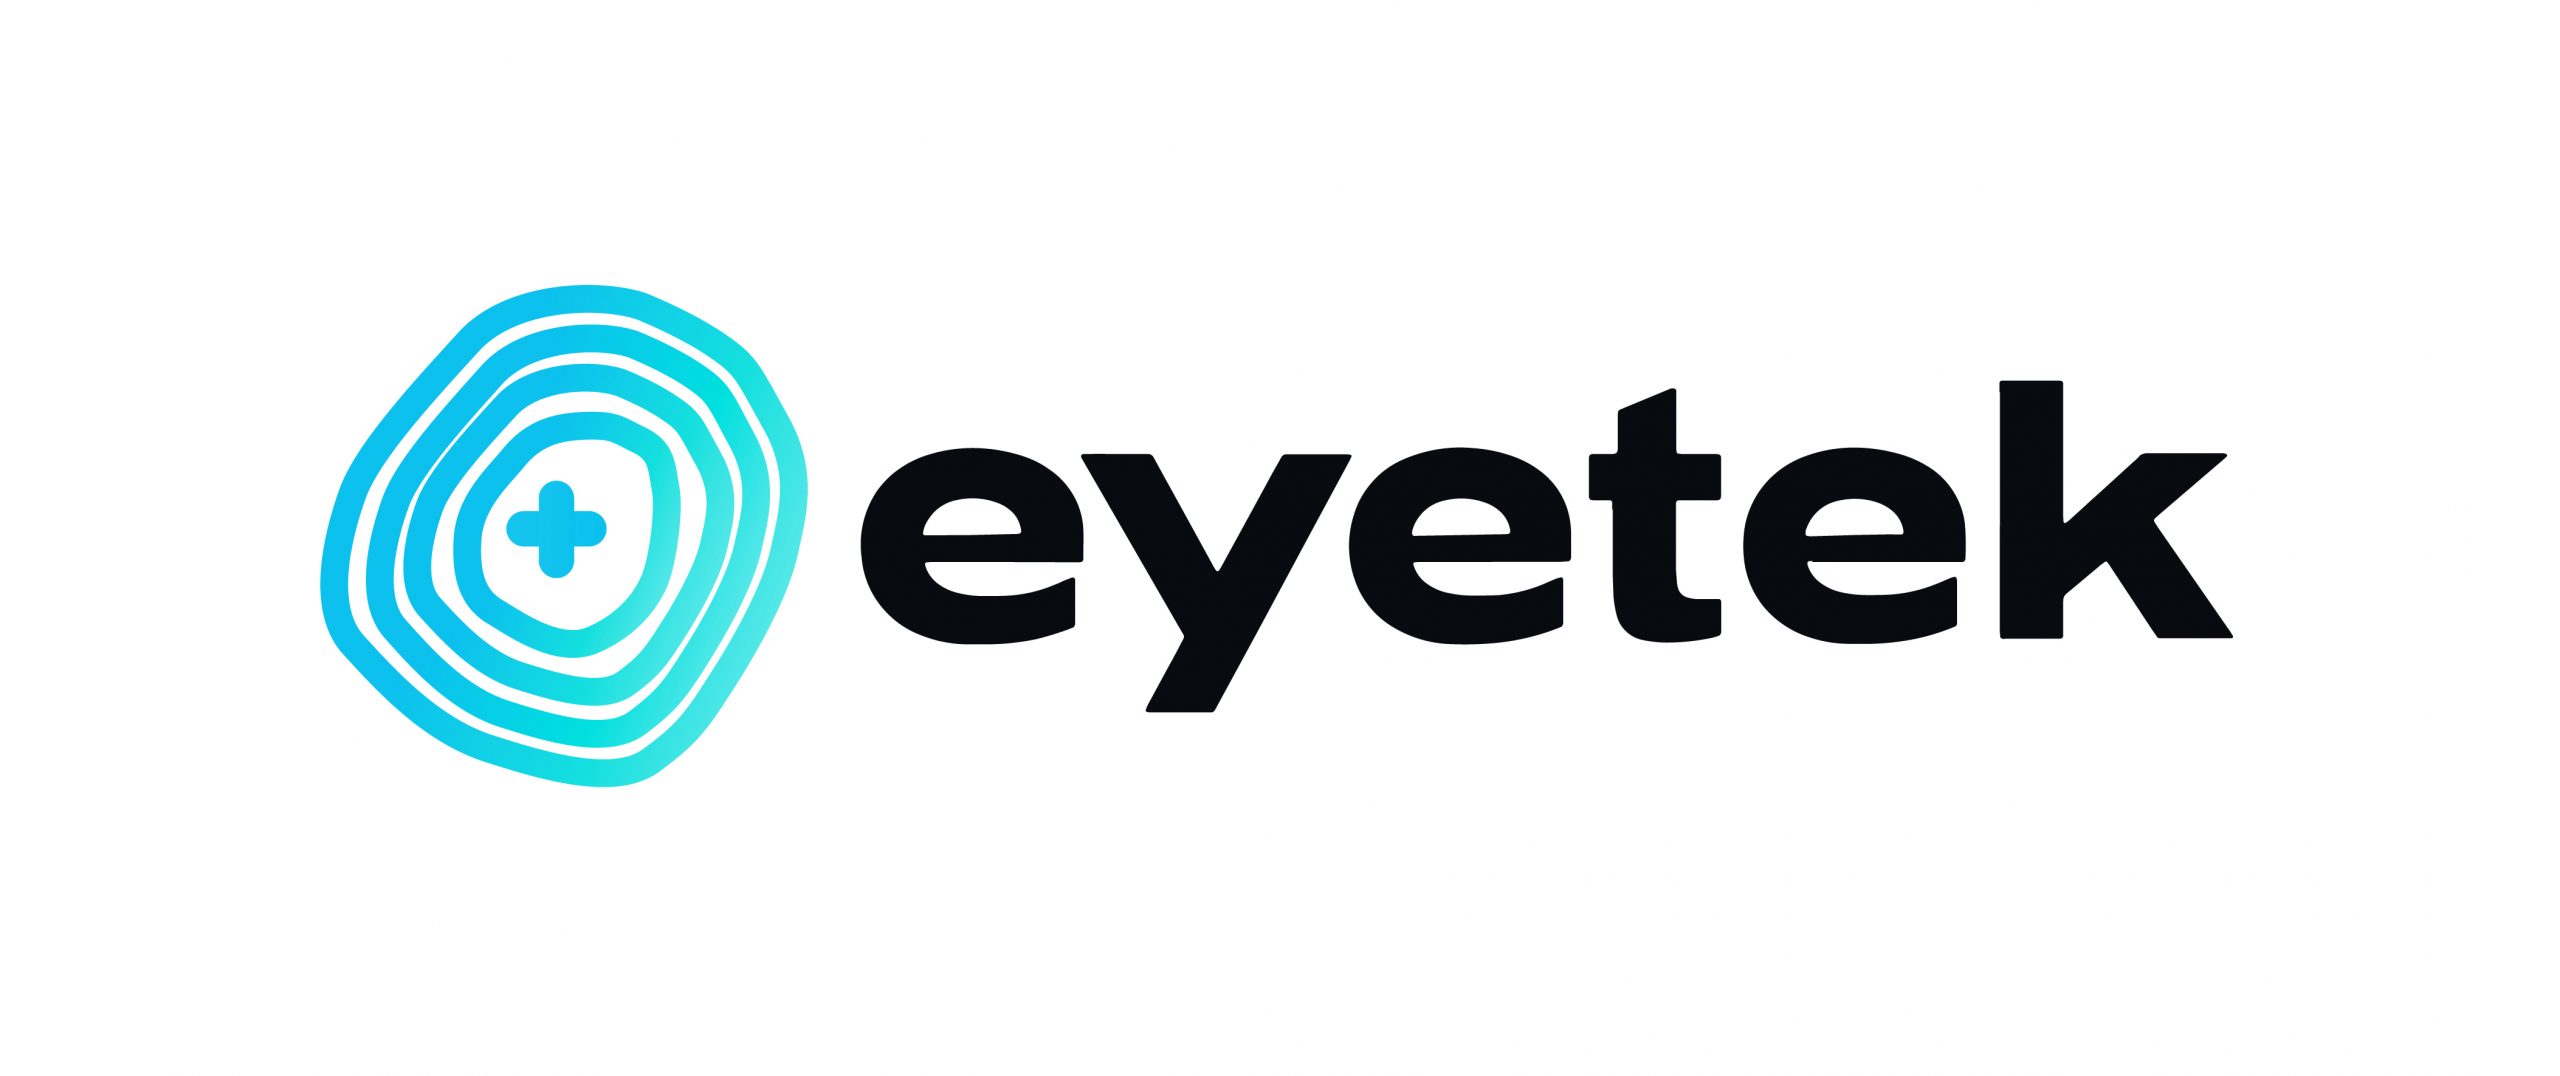 Eyetek